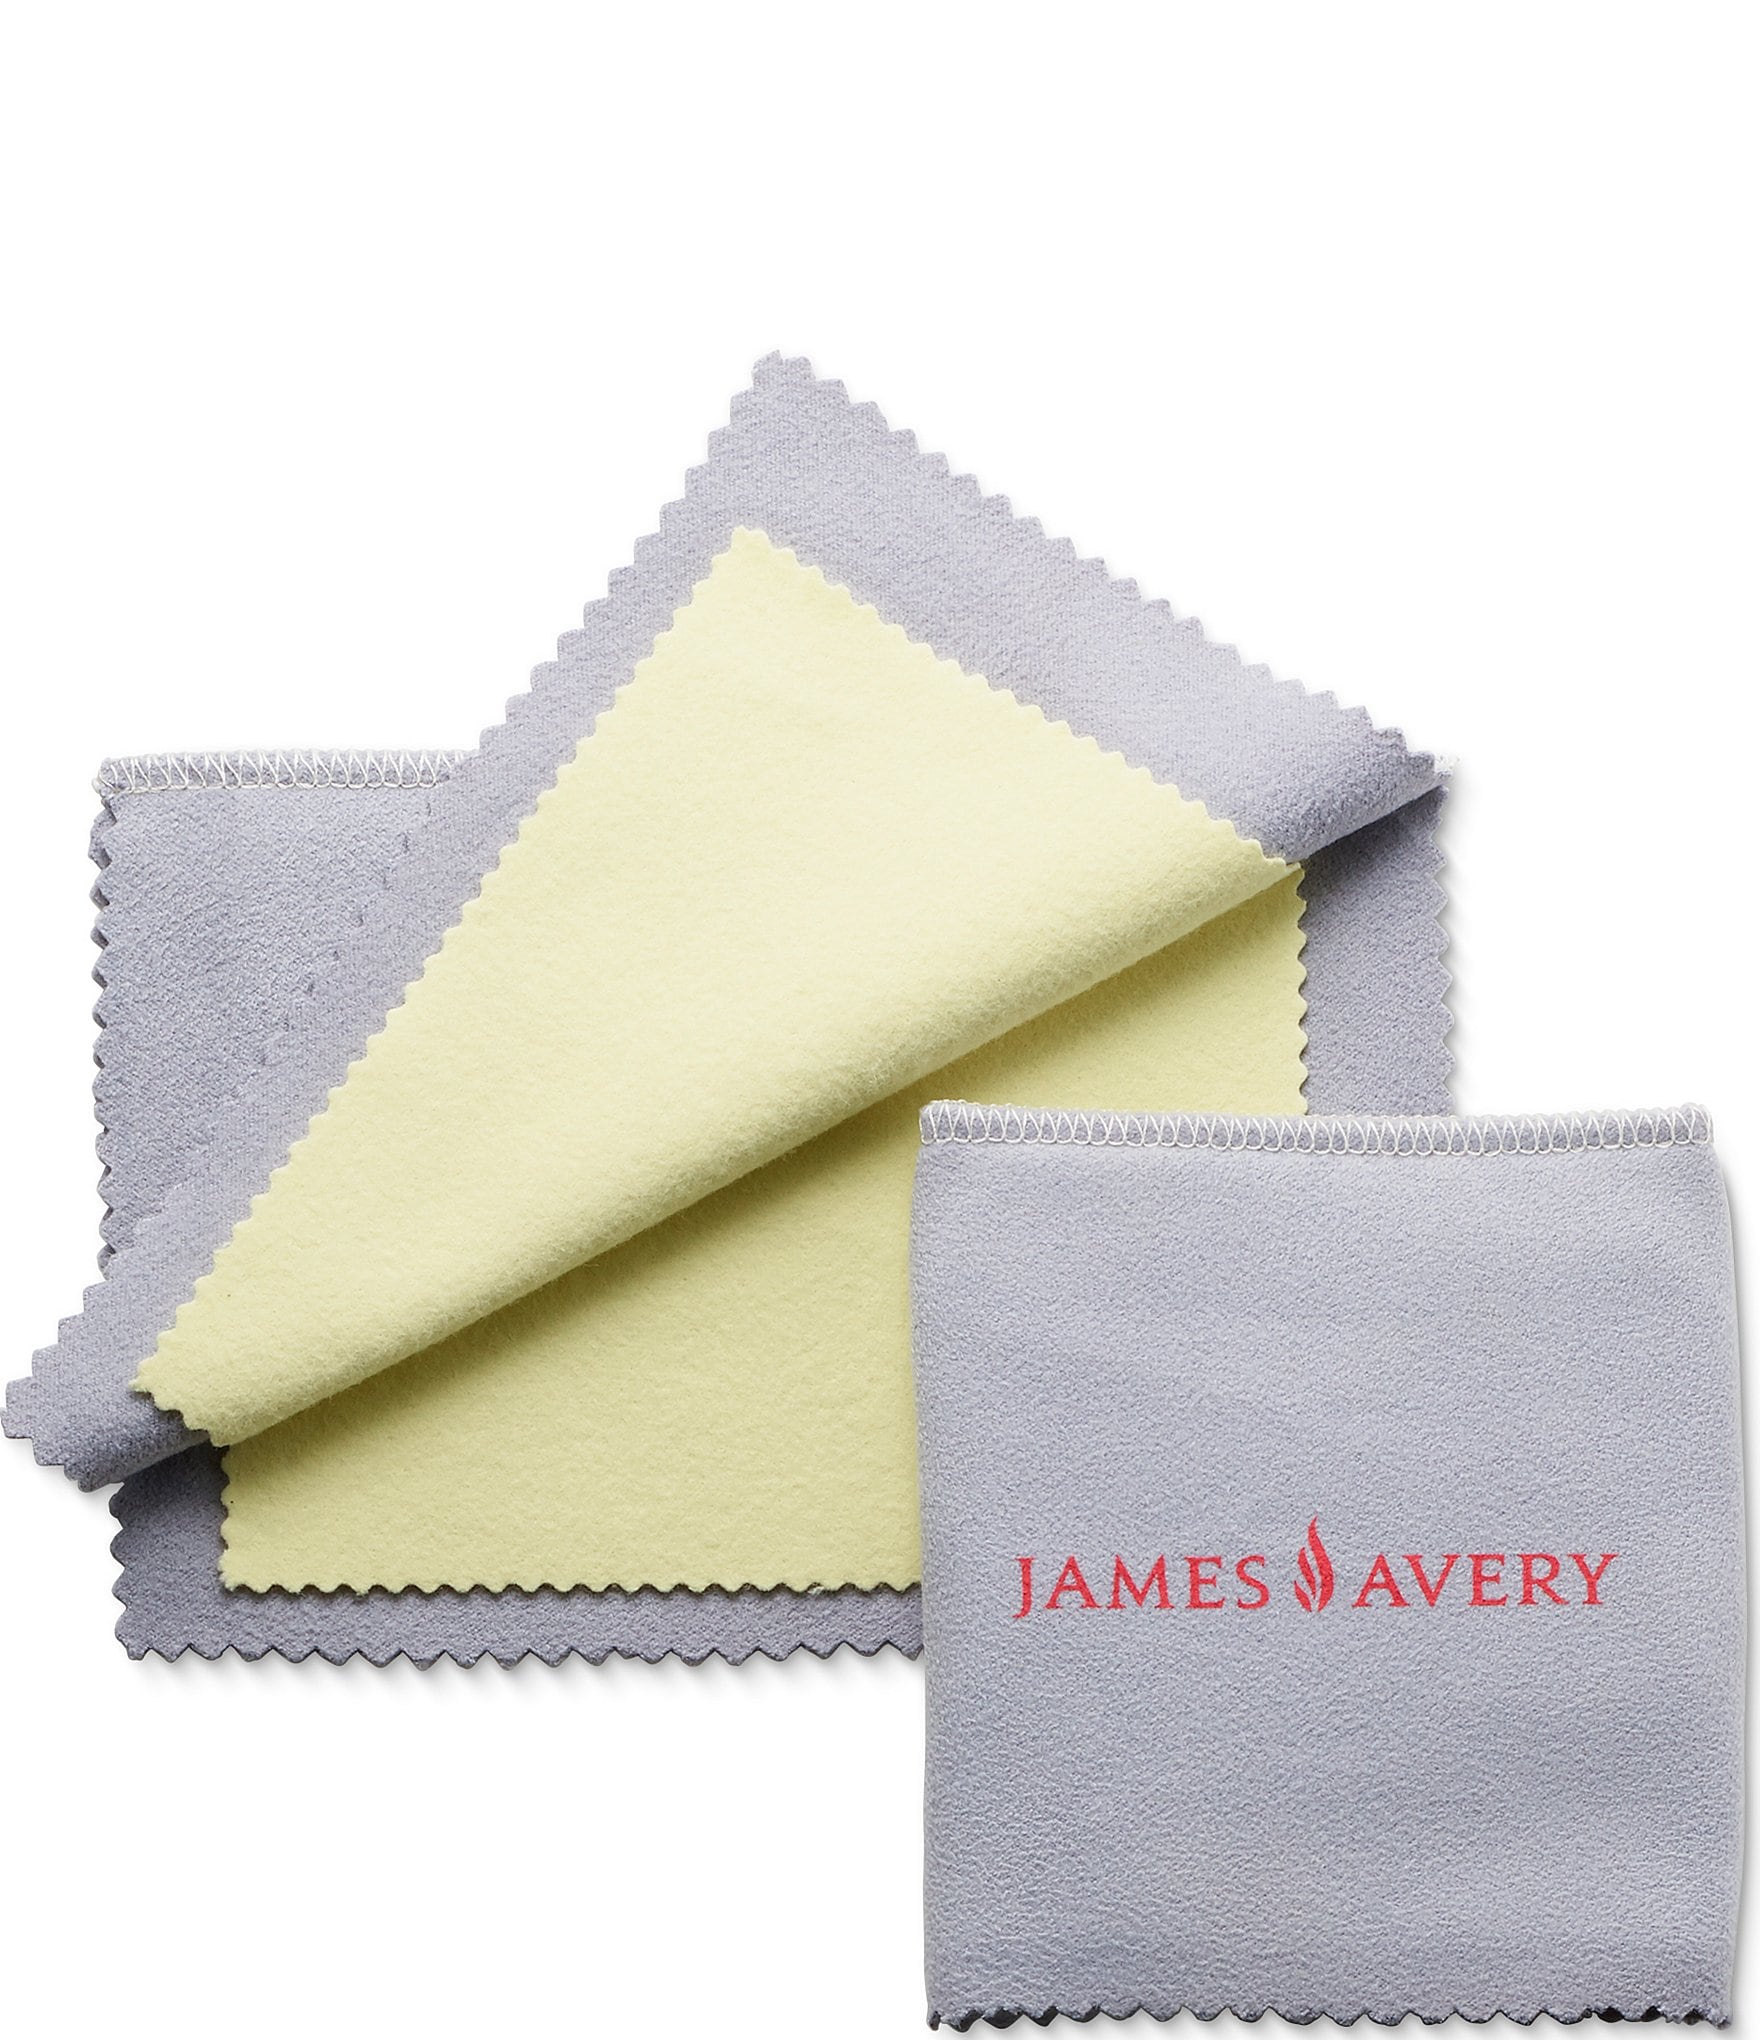 James Avery Bronze And Silver Polishing Cloth Dillard's | lupon.gov.ph